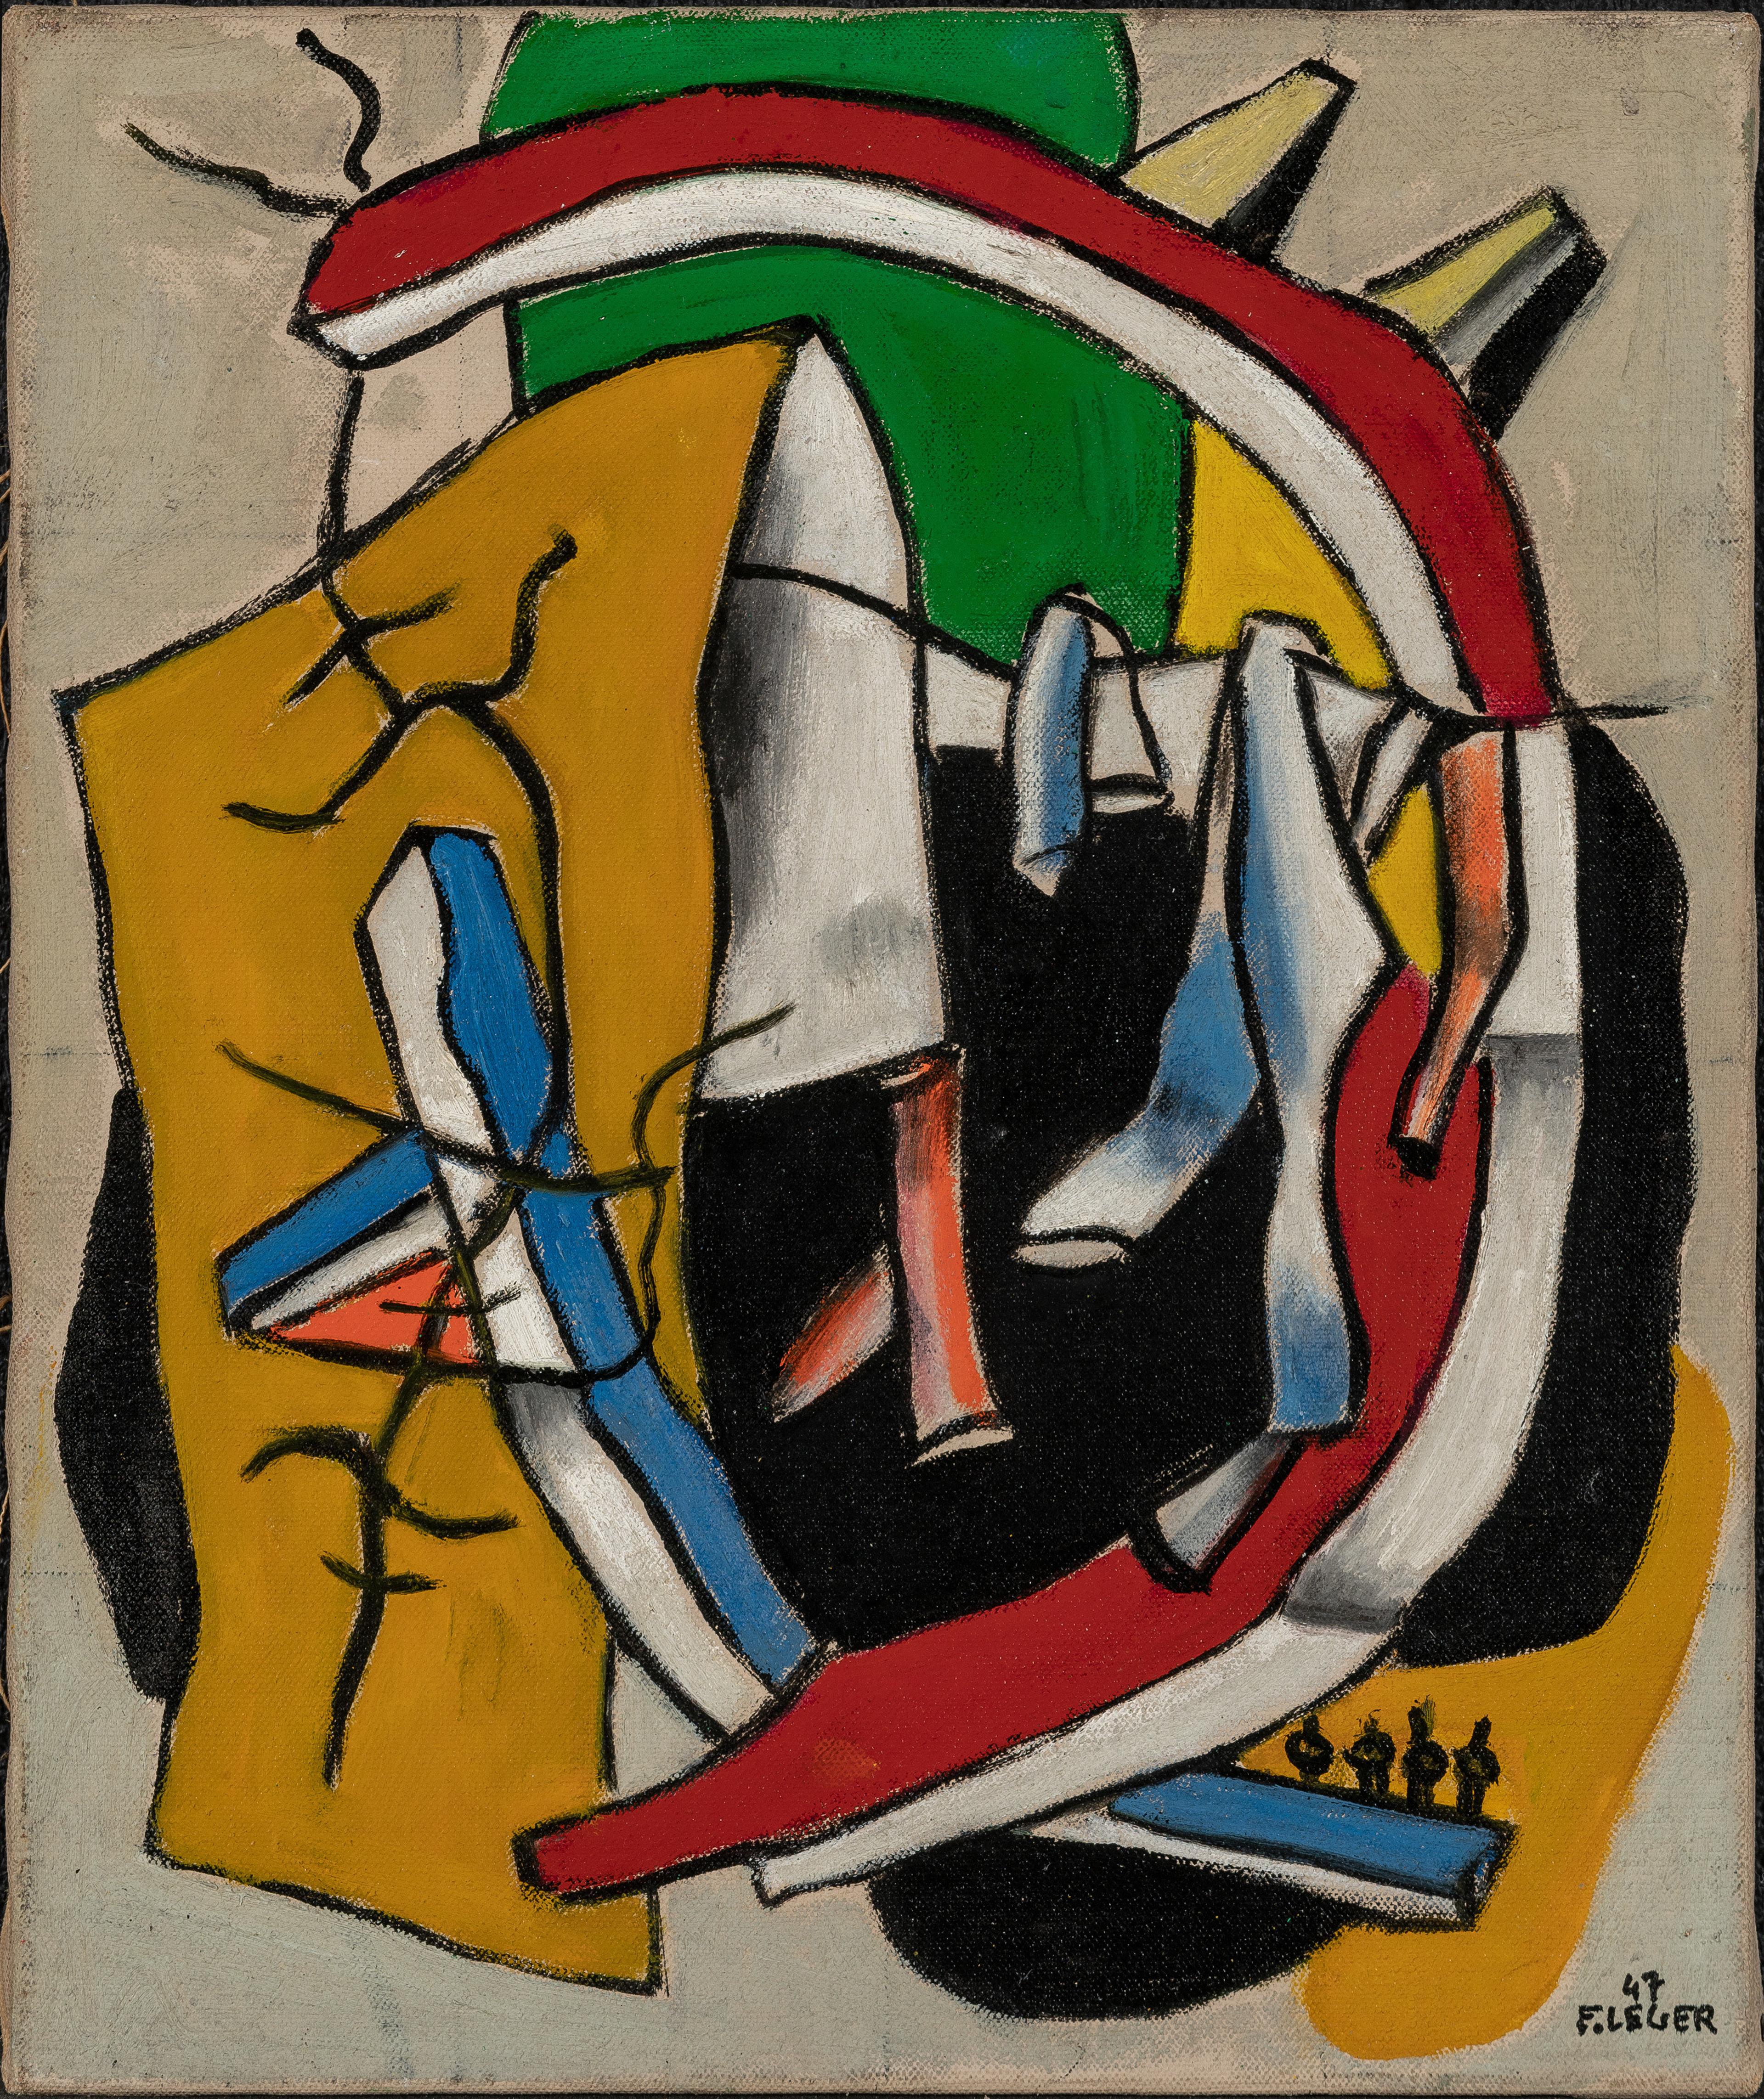 Abstrahert verk med former i gult, rødt, hvitt og blått på hvit bakgrunn